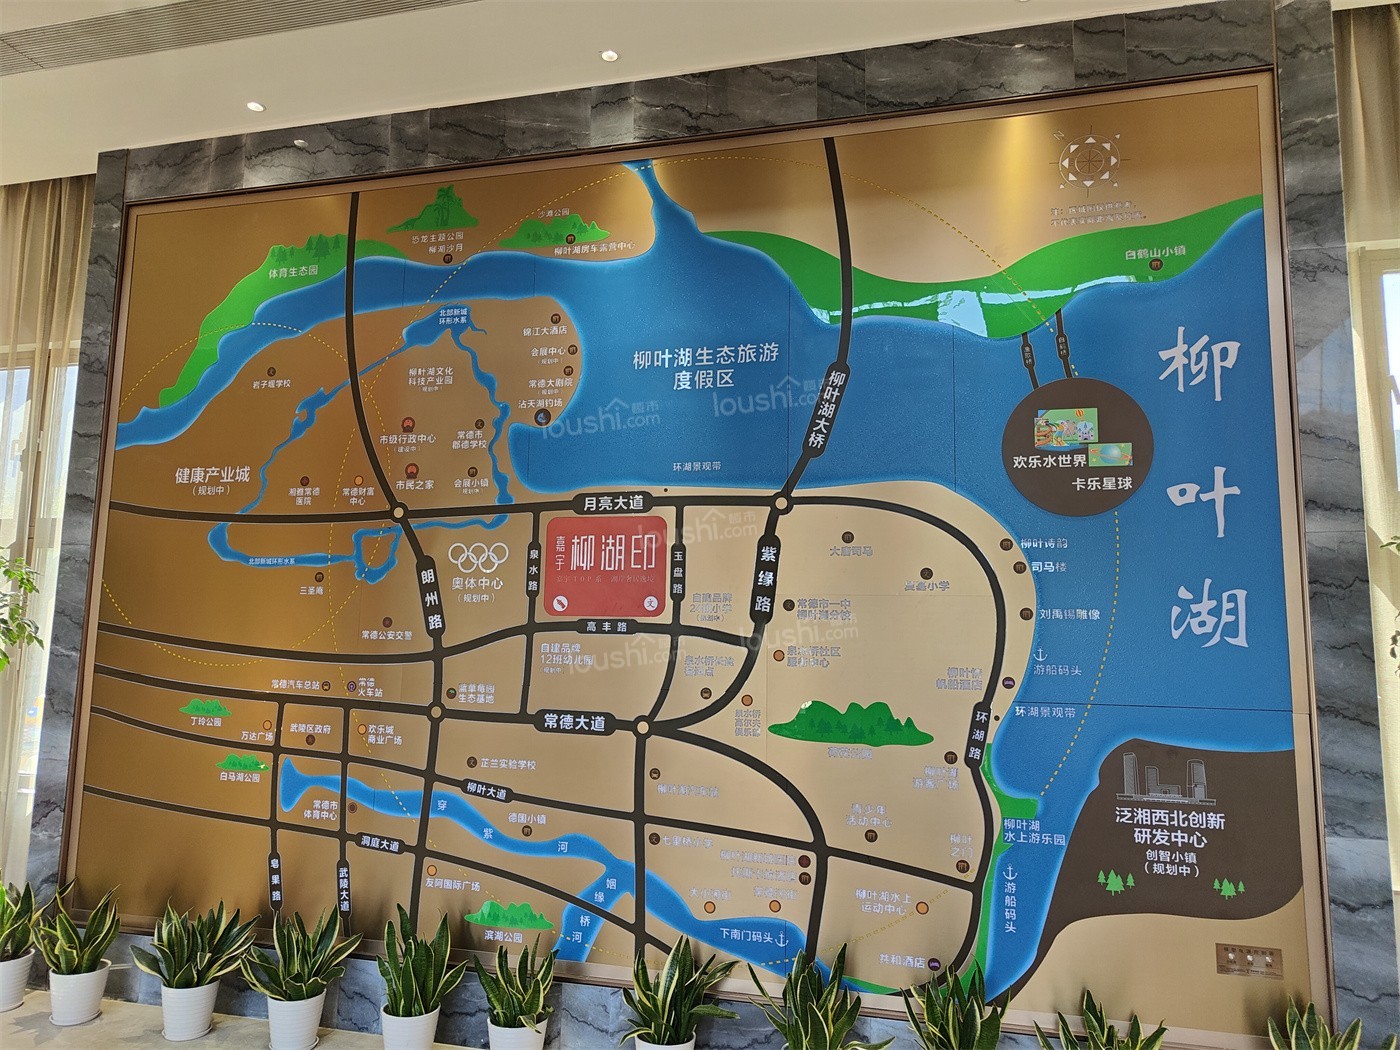 嘉宇柳湖印营销中心